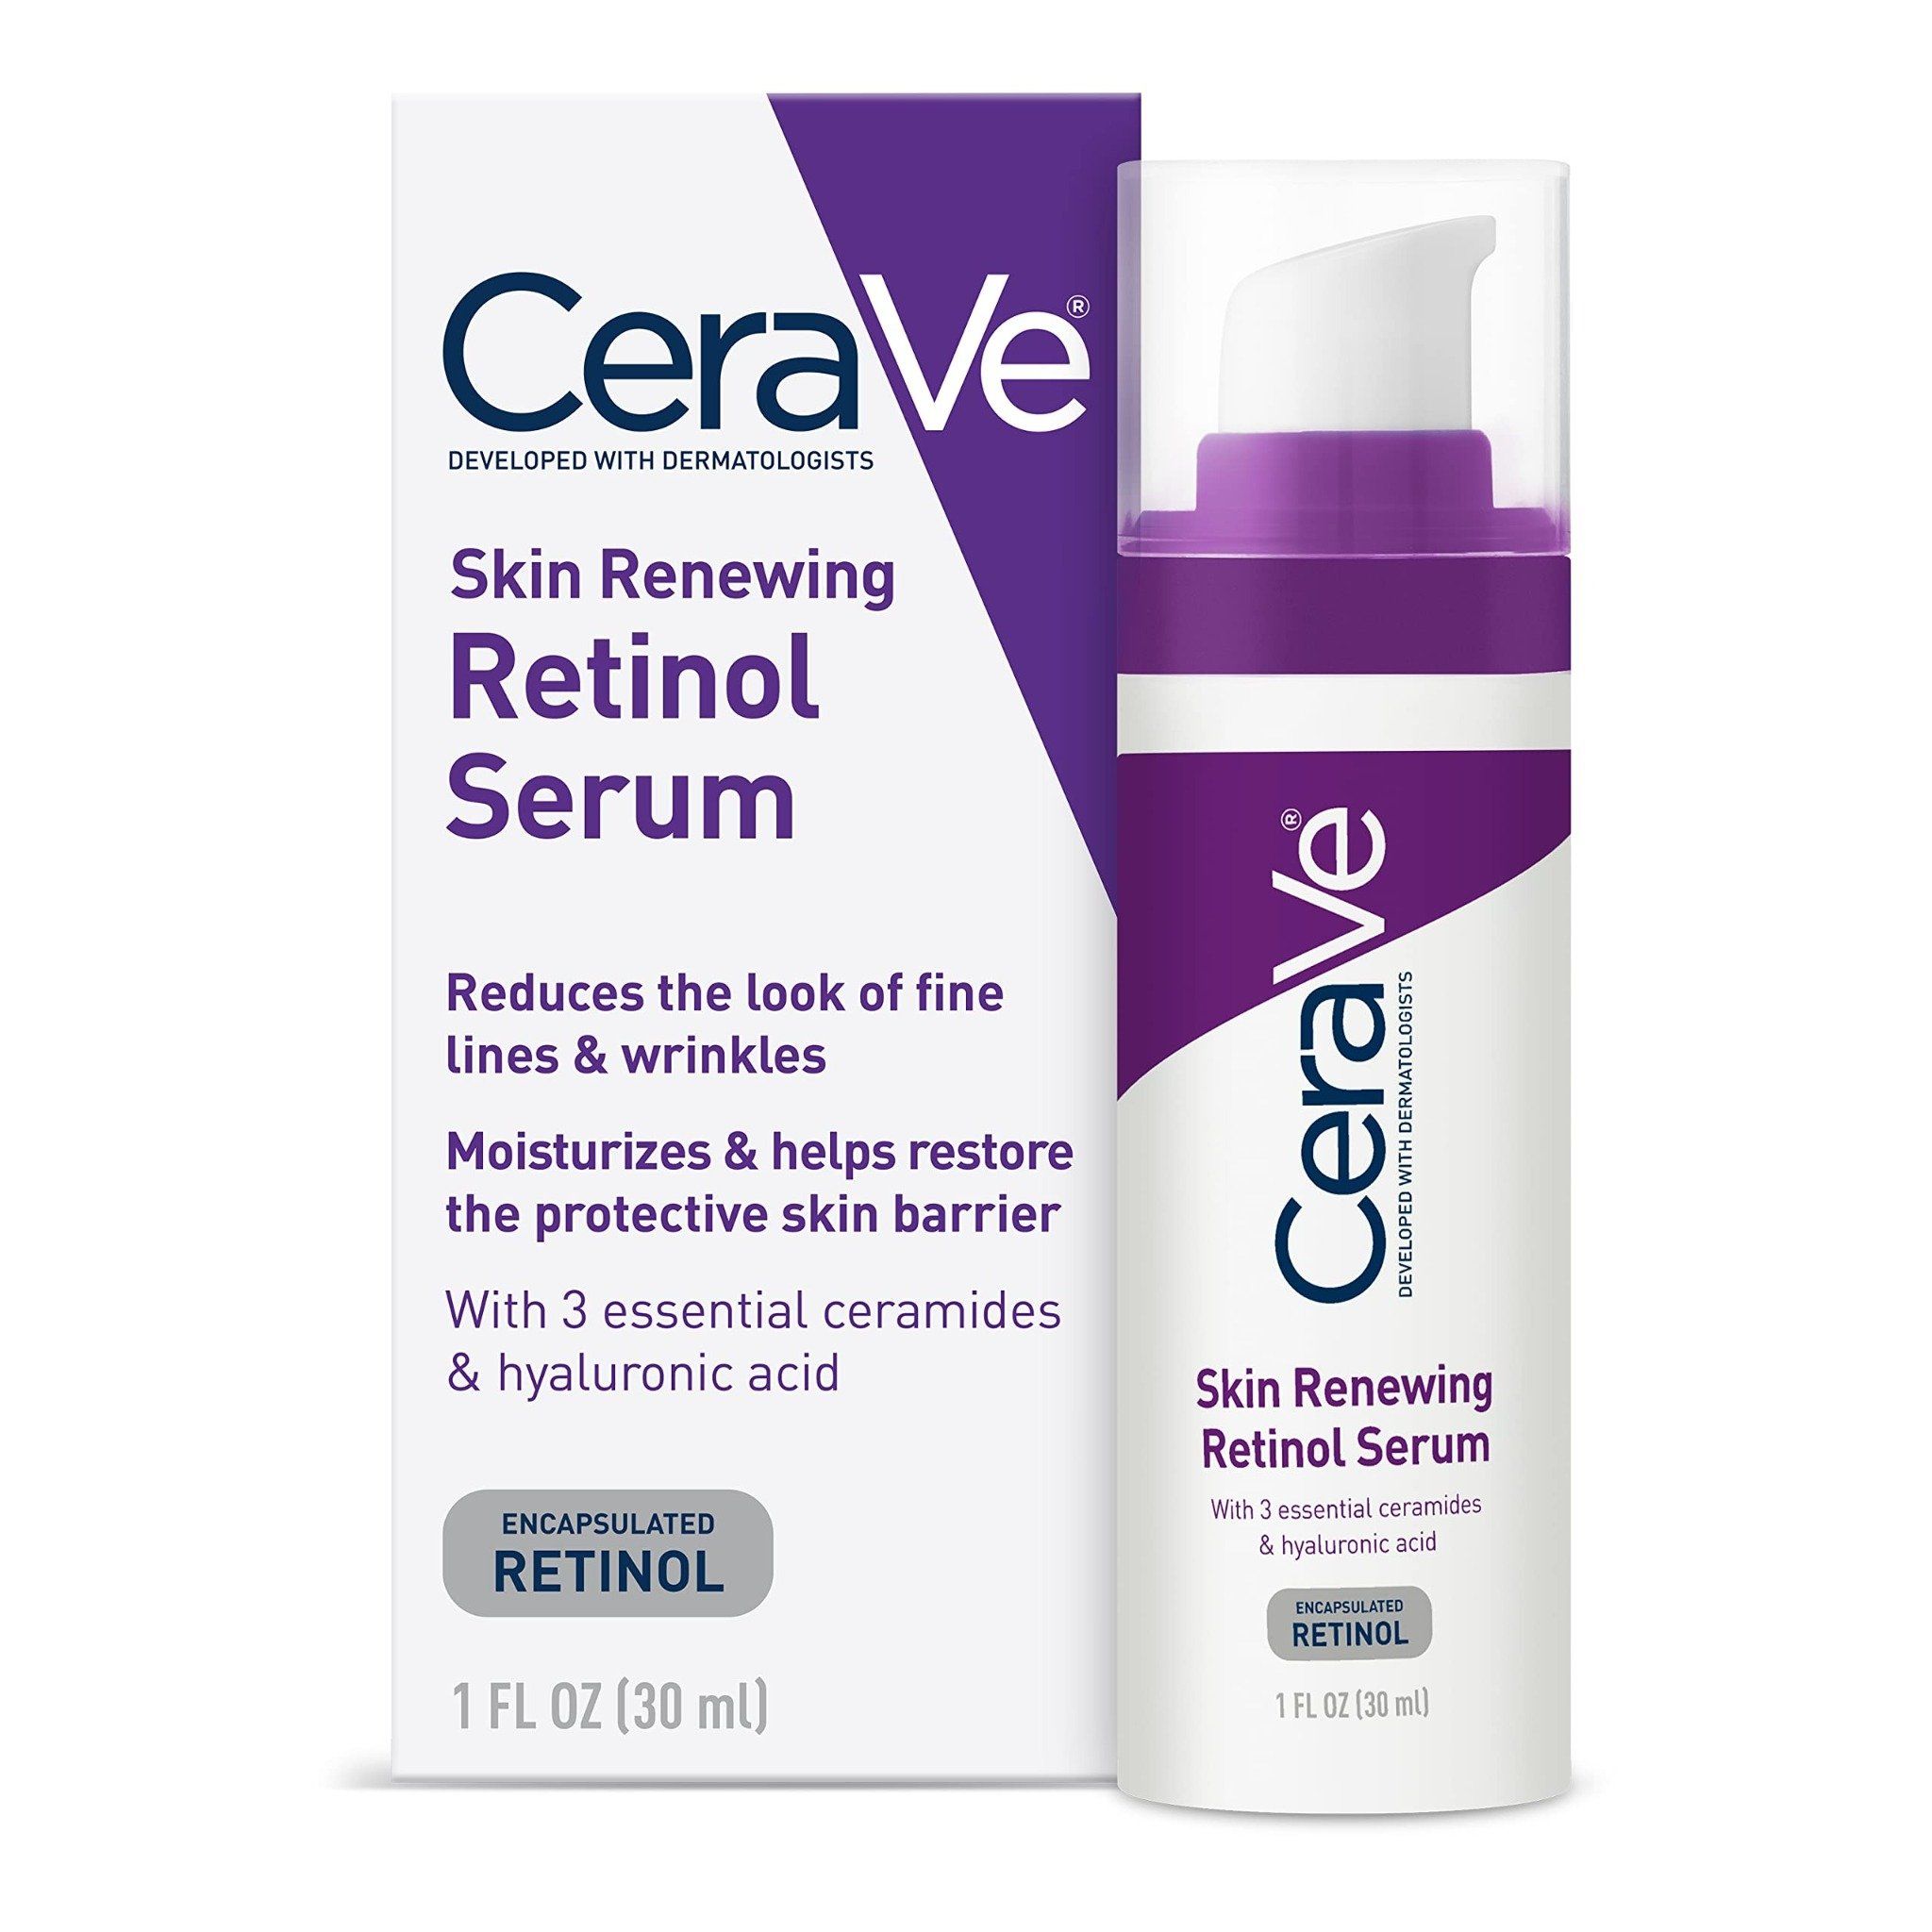 Tinh chất chống lão hóa da Cerave Skin Renewing Retinol Serum